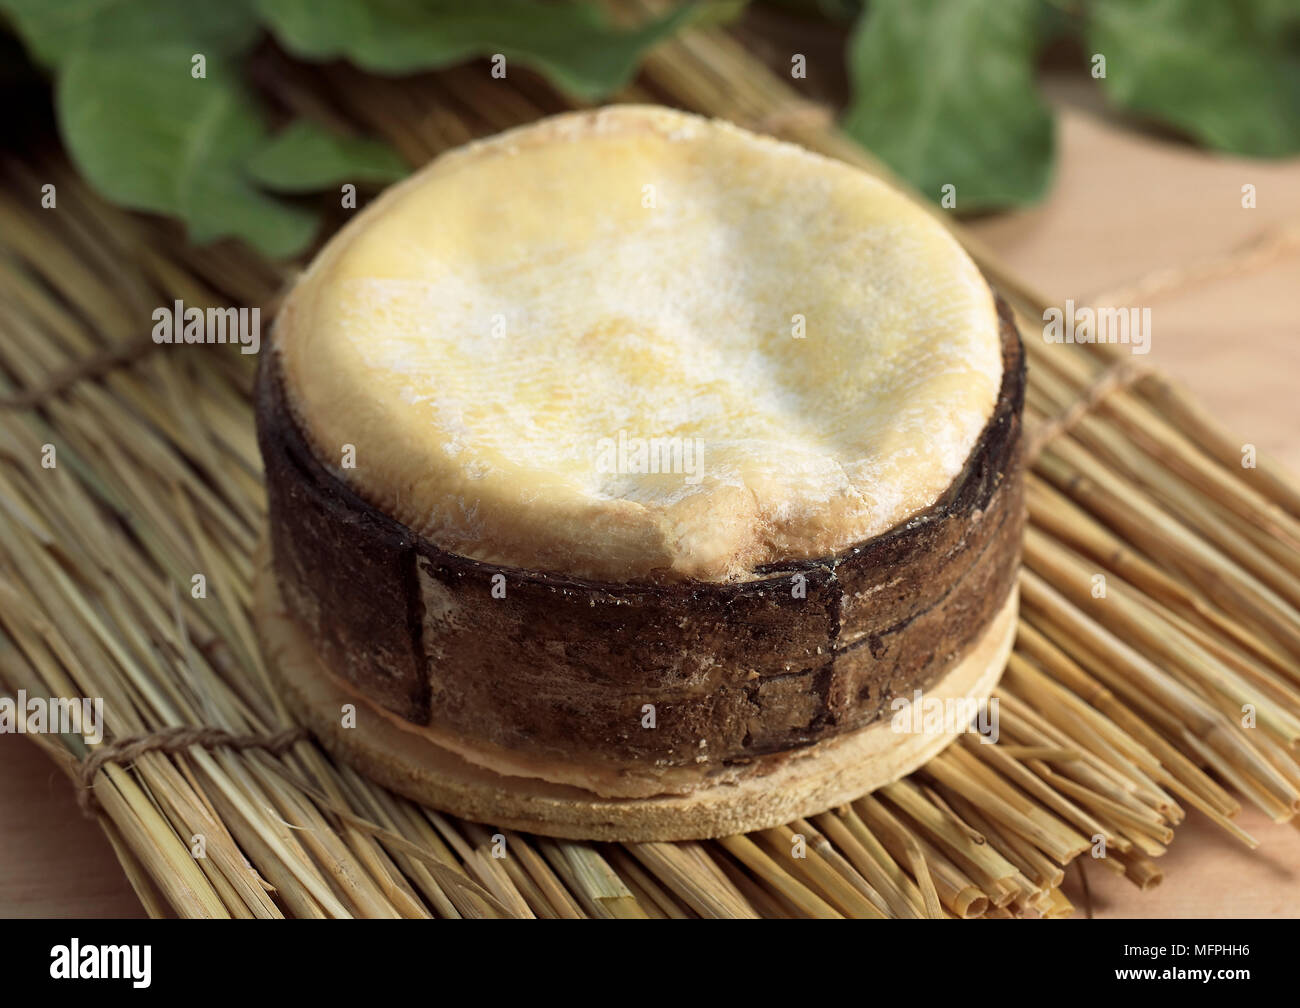 Käse, Vacherin Mont d ' or, hergestellt aus Kuhmilch in der Schweiz und  Jura in Frankreich Stockfotografie - Alamy